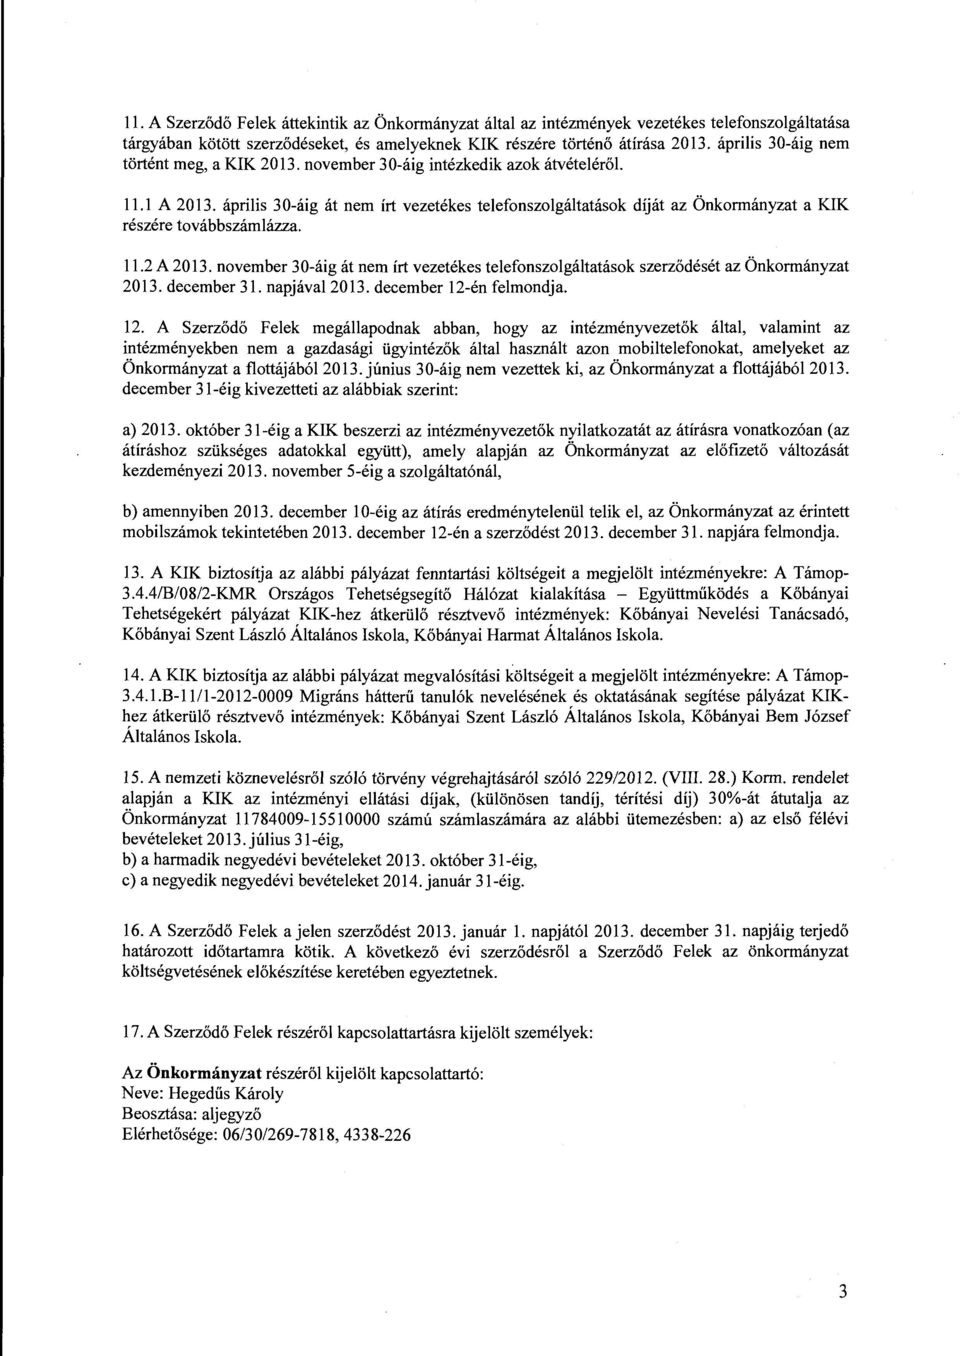 ápriis 30-áig át nem írt vezetékes teefonszogátatások díját az Önkormányzat a KIK részére továbbszámázza. 11.2 A 2013.